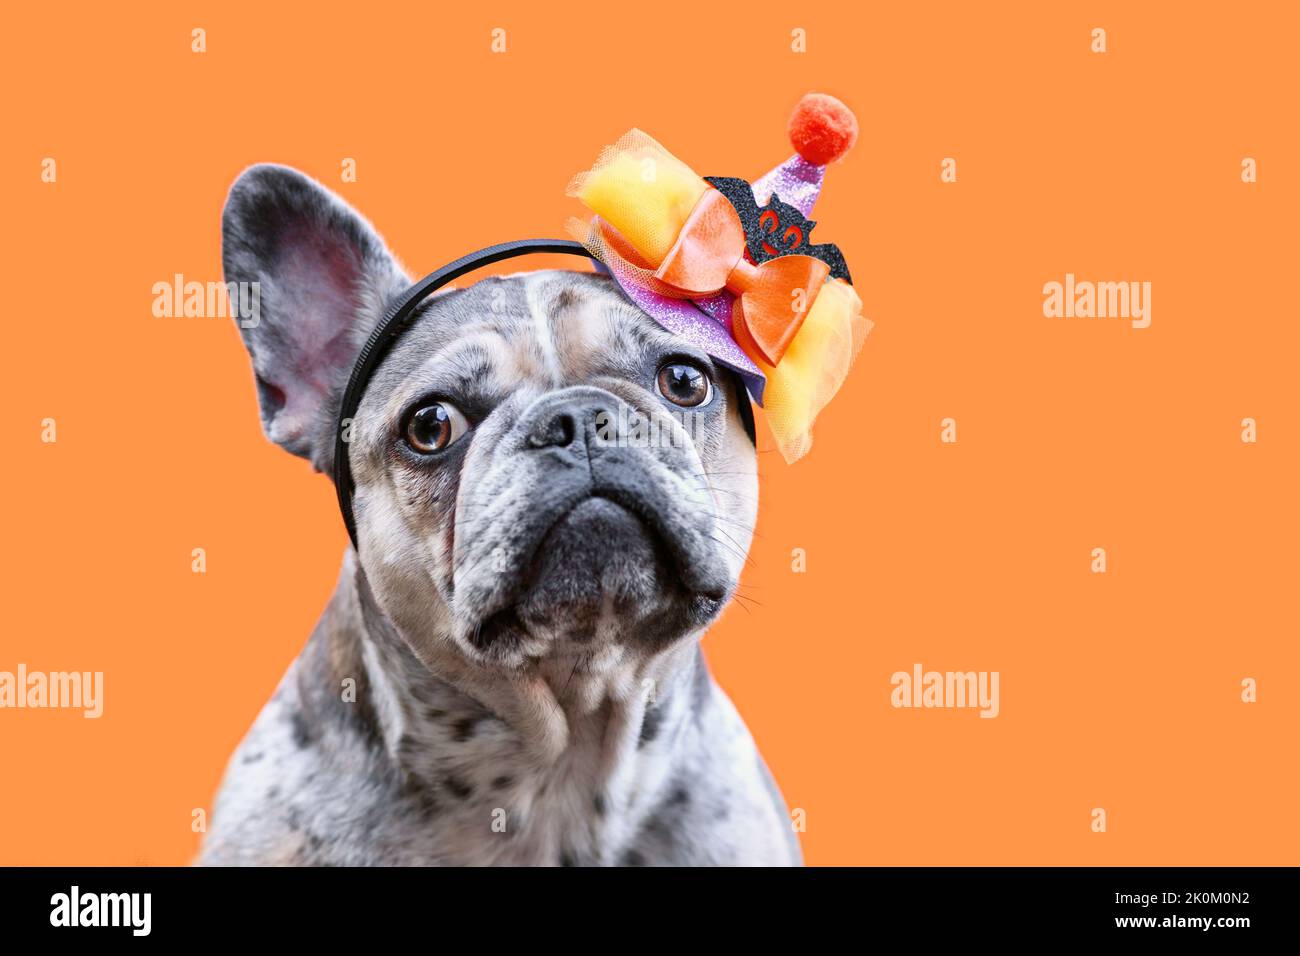 Ritratto di merle French Bulldog con cappello da festa in costume di Halloween su sfondo arancione Foto Stock